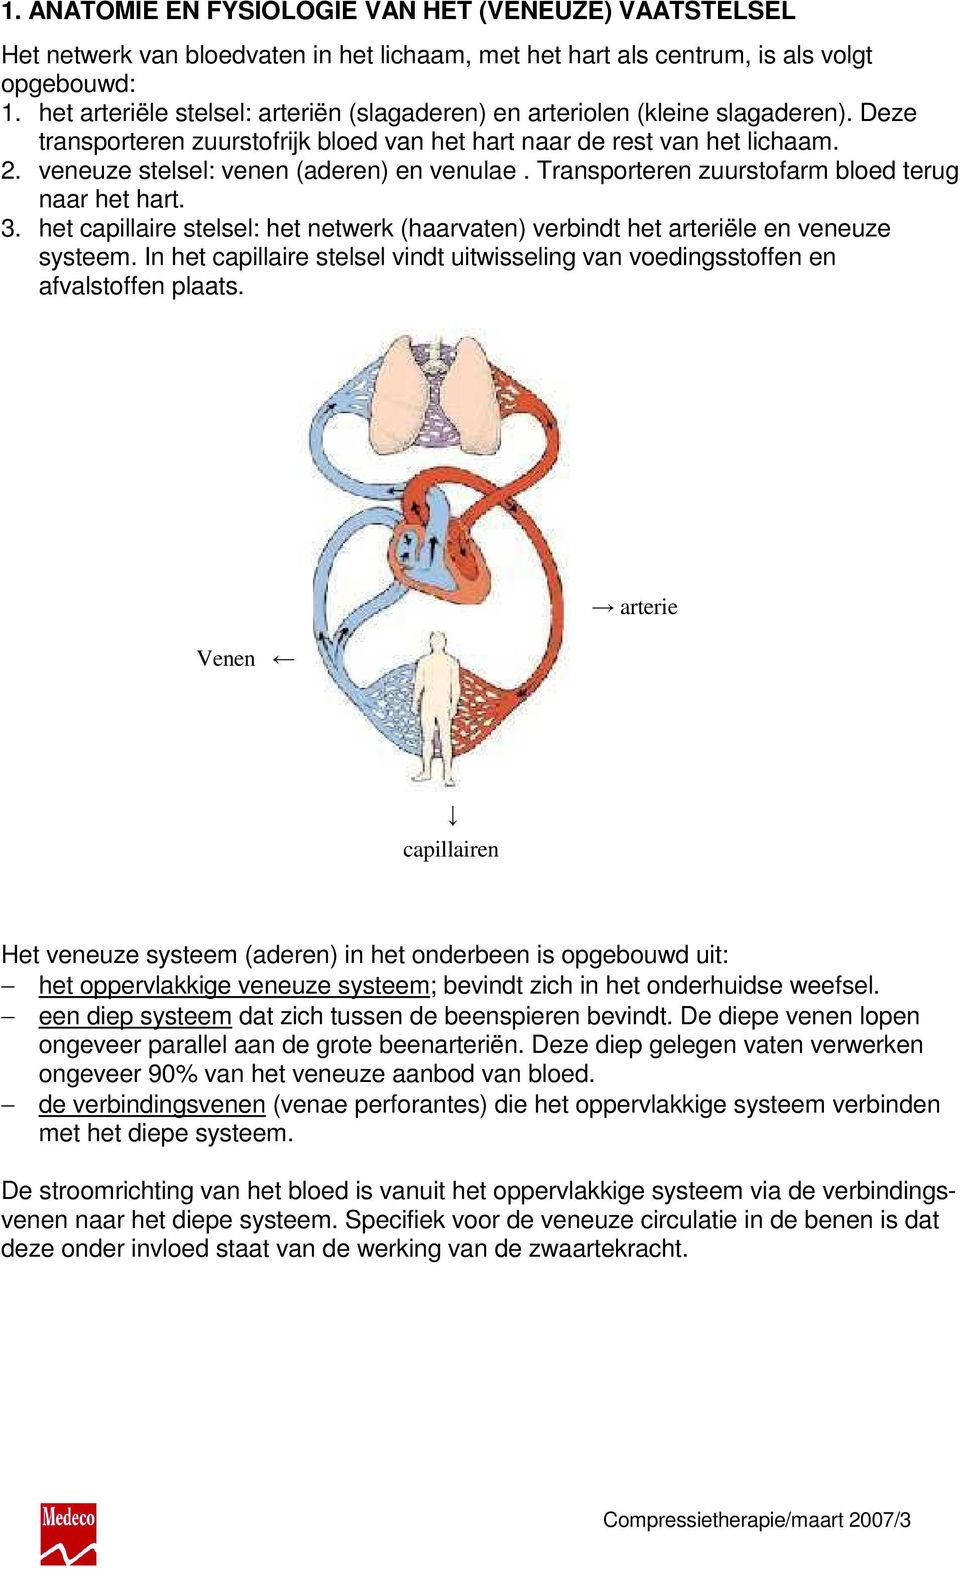 veneuze stelsel: venen (aderen) en venulae. Transporteren zuurstofarm bloed terug naar het hart. 3. het capillaire stelsel: het netwerk (haarvaten) verbindt het arteriële en veneuze systeem.